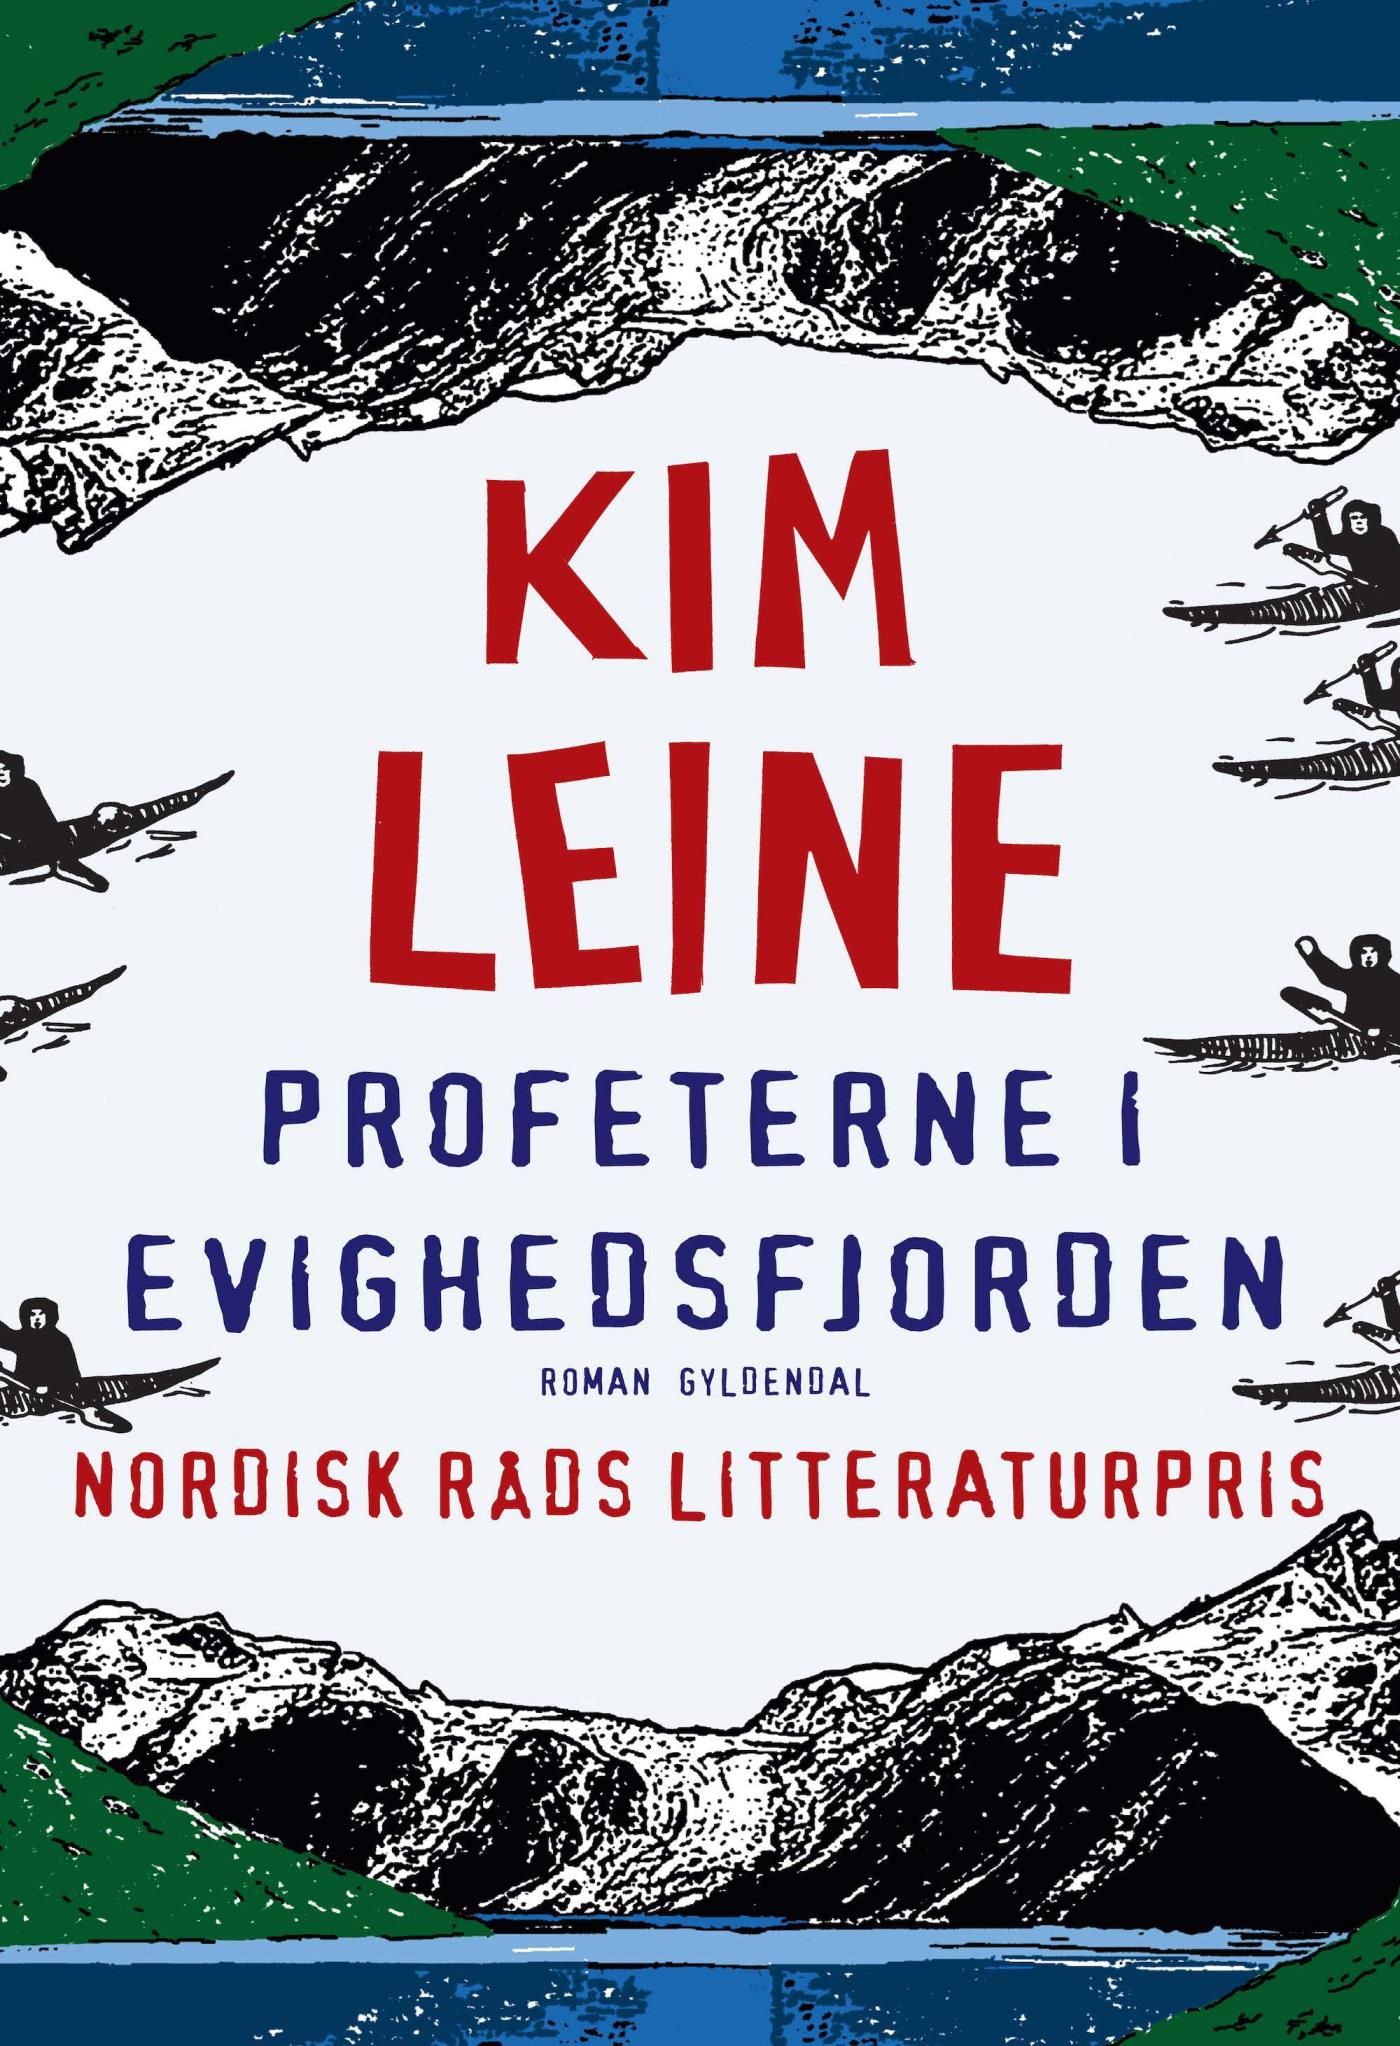 Profeterne i Evighedsfjorden, e-bok av Kim Leine